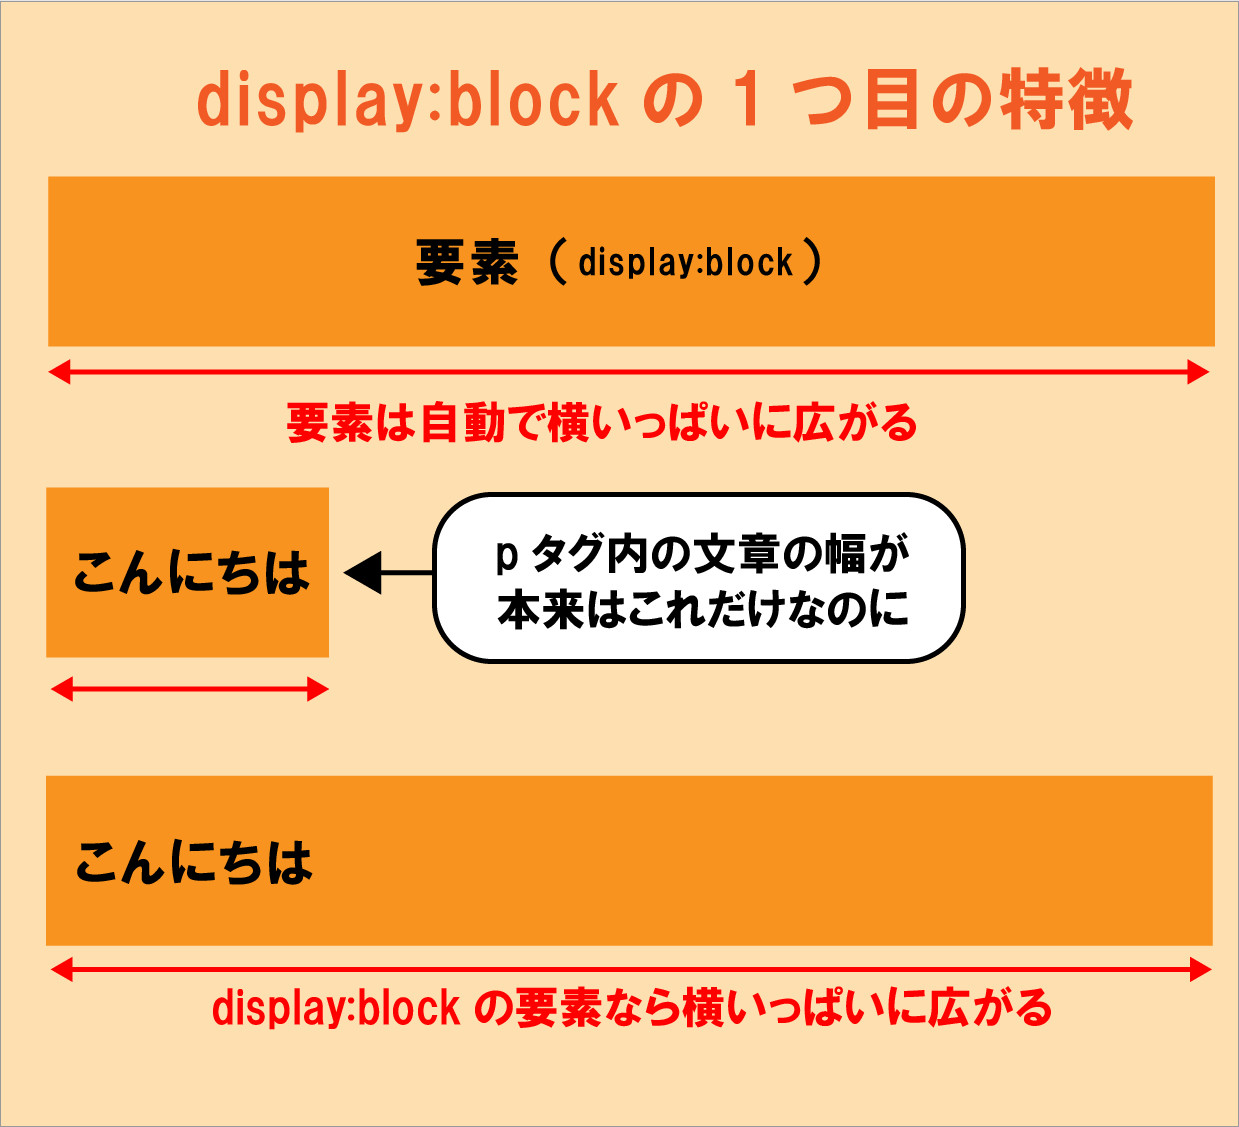 display:blockの特徴①